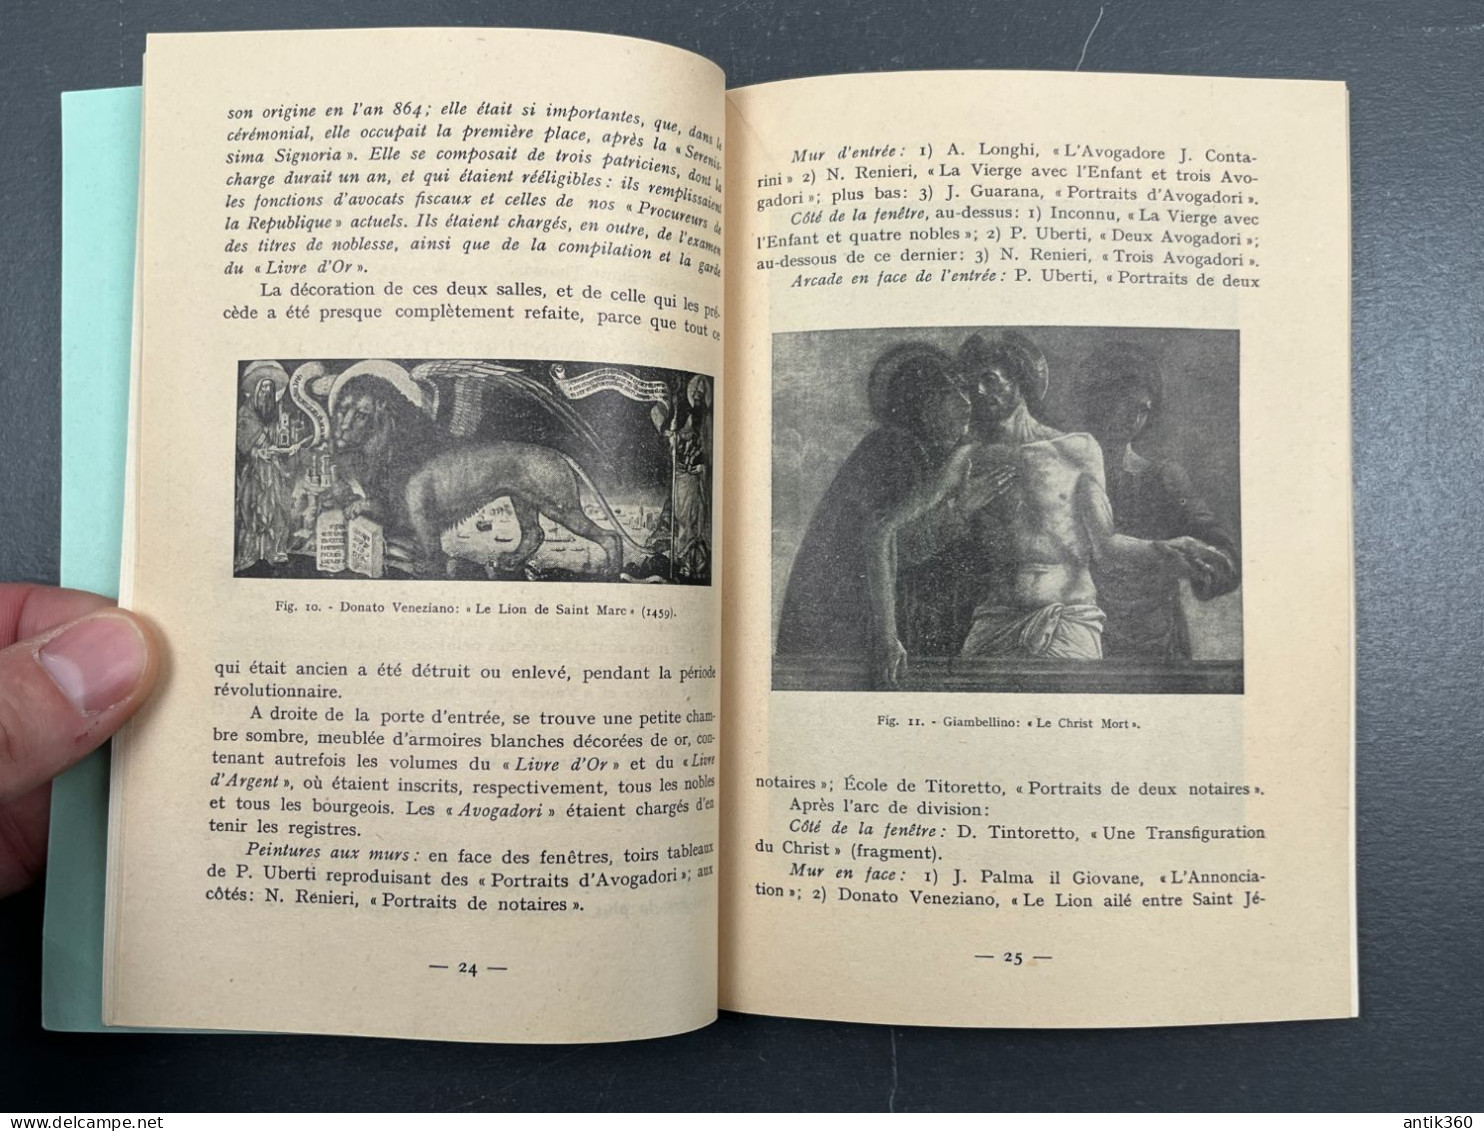 Ancien Guide Historique Artistique LE PALAIS DES DOGES Venise Italie 1957 - Tourism Brochures